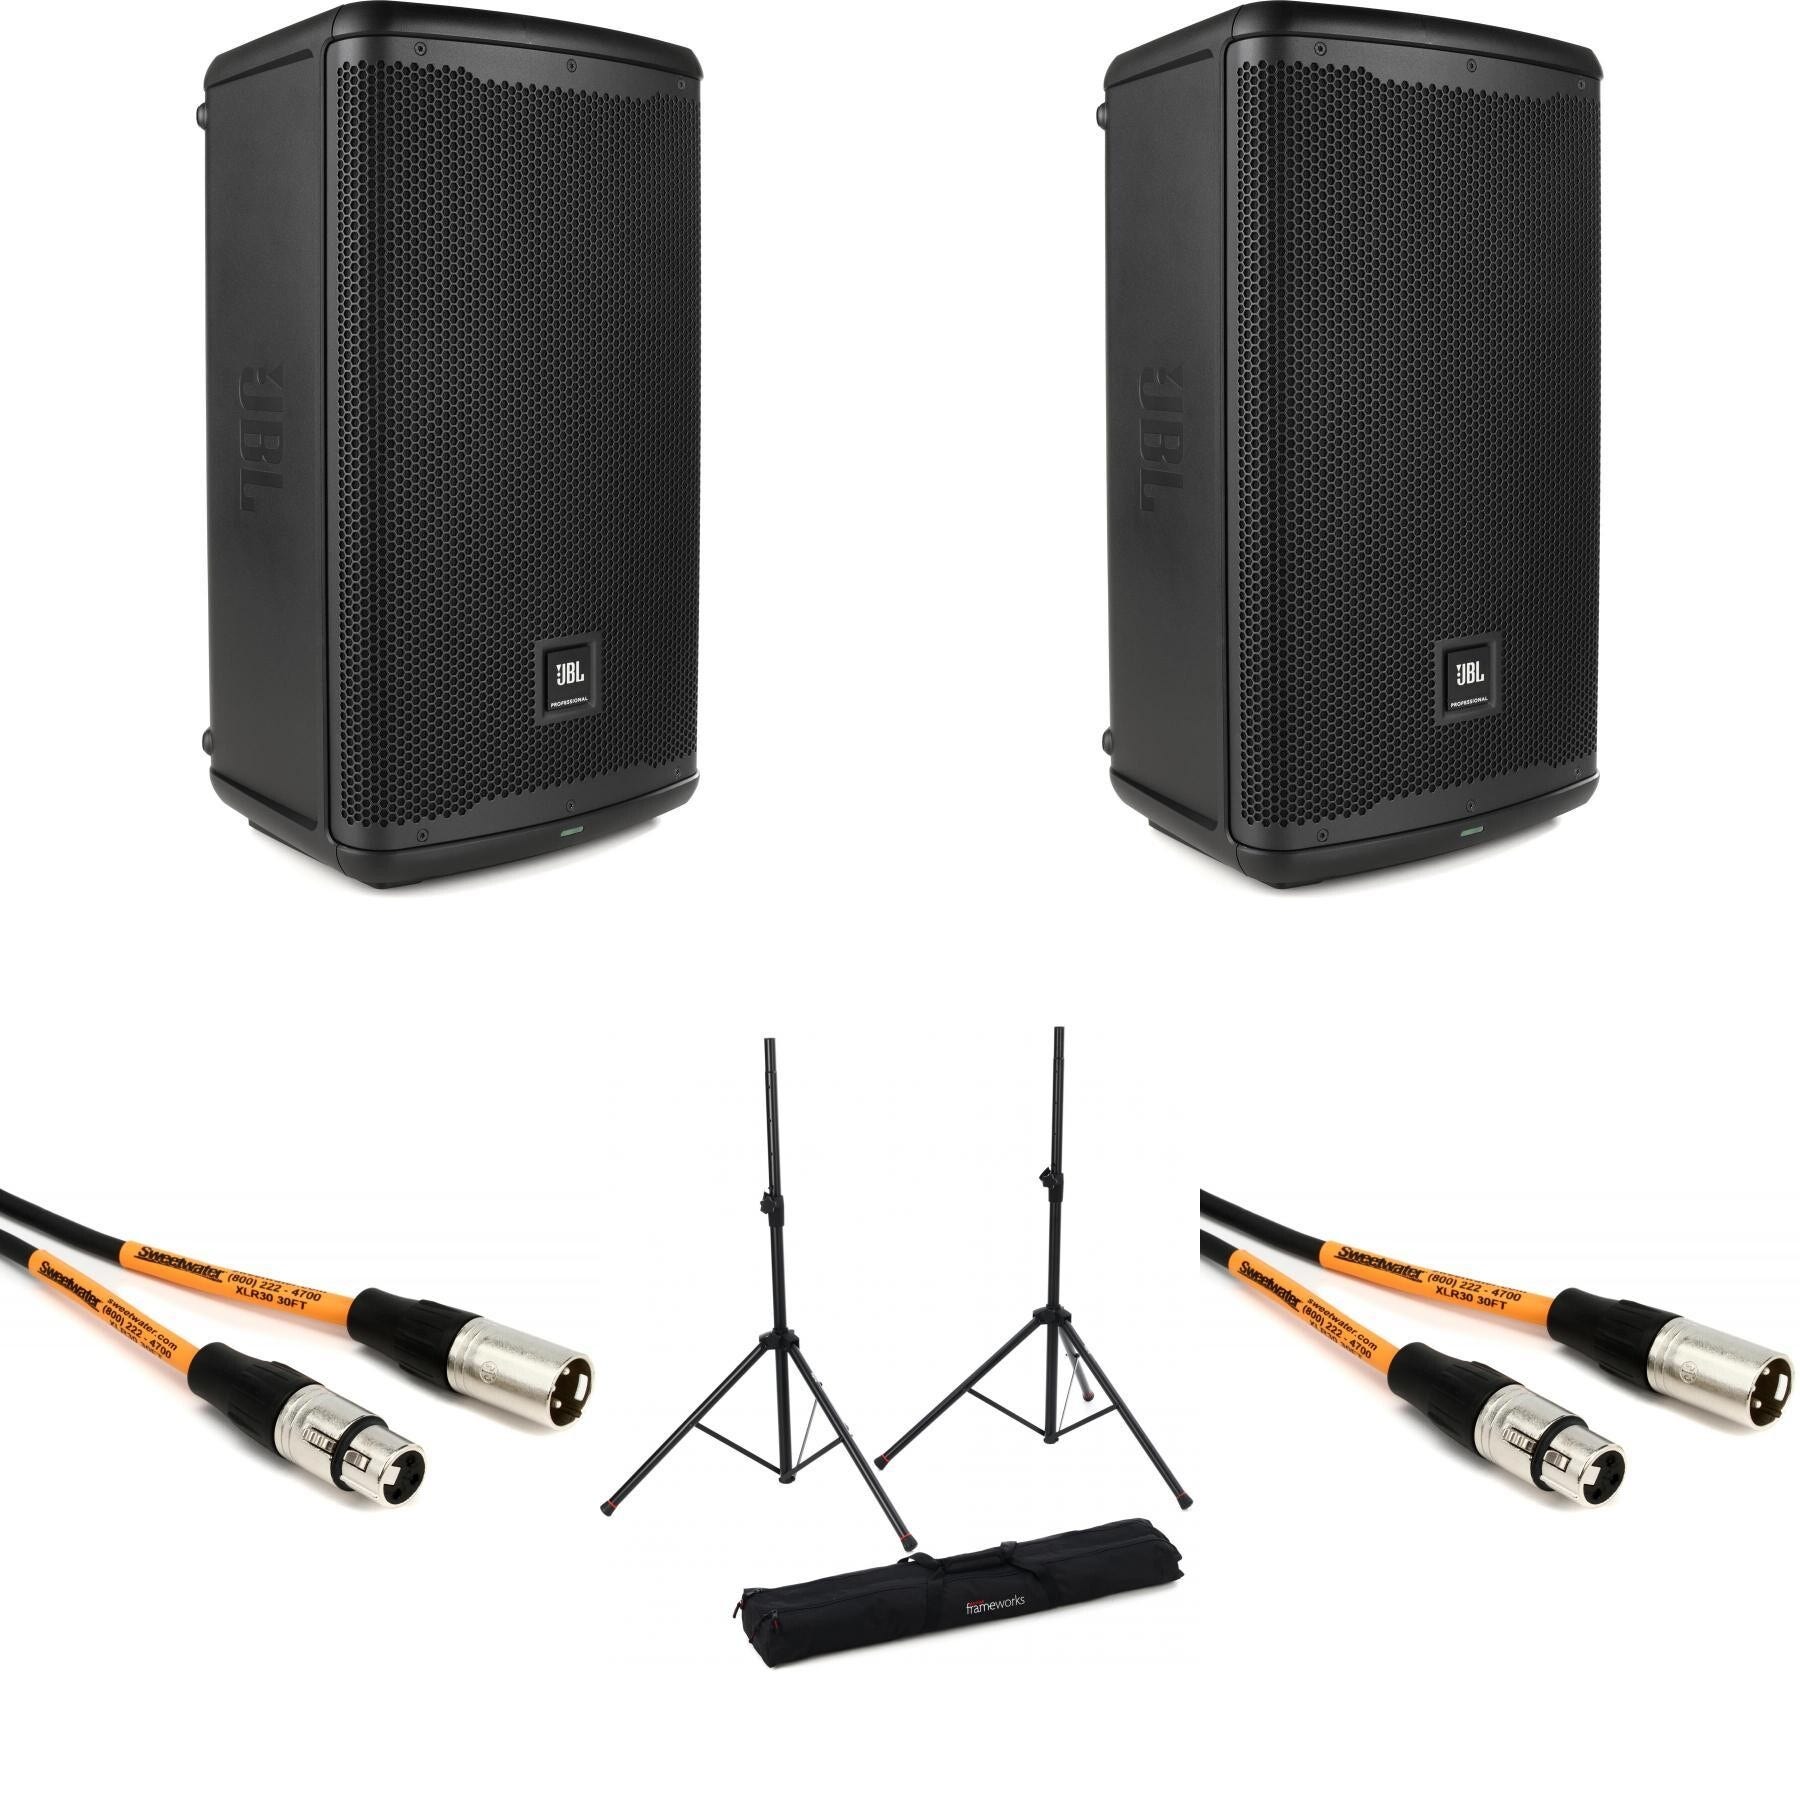 JBL-EON710, JBL Professional Loudspeakers